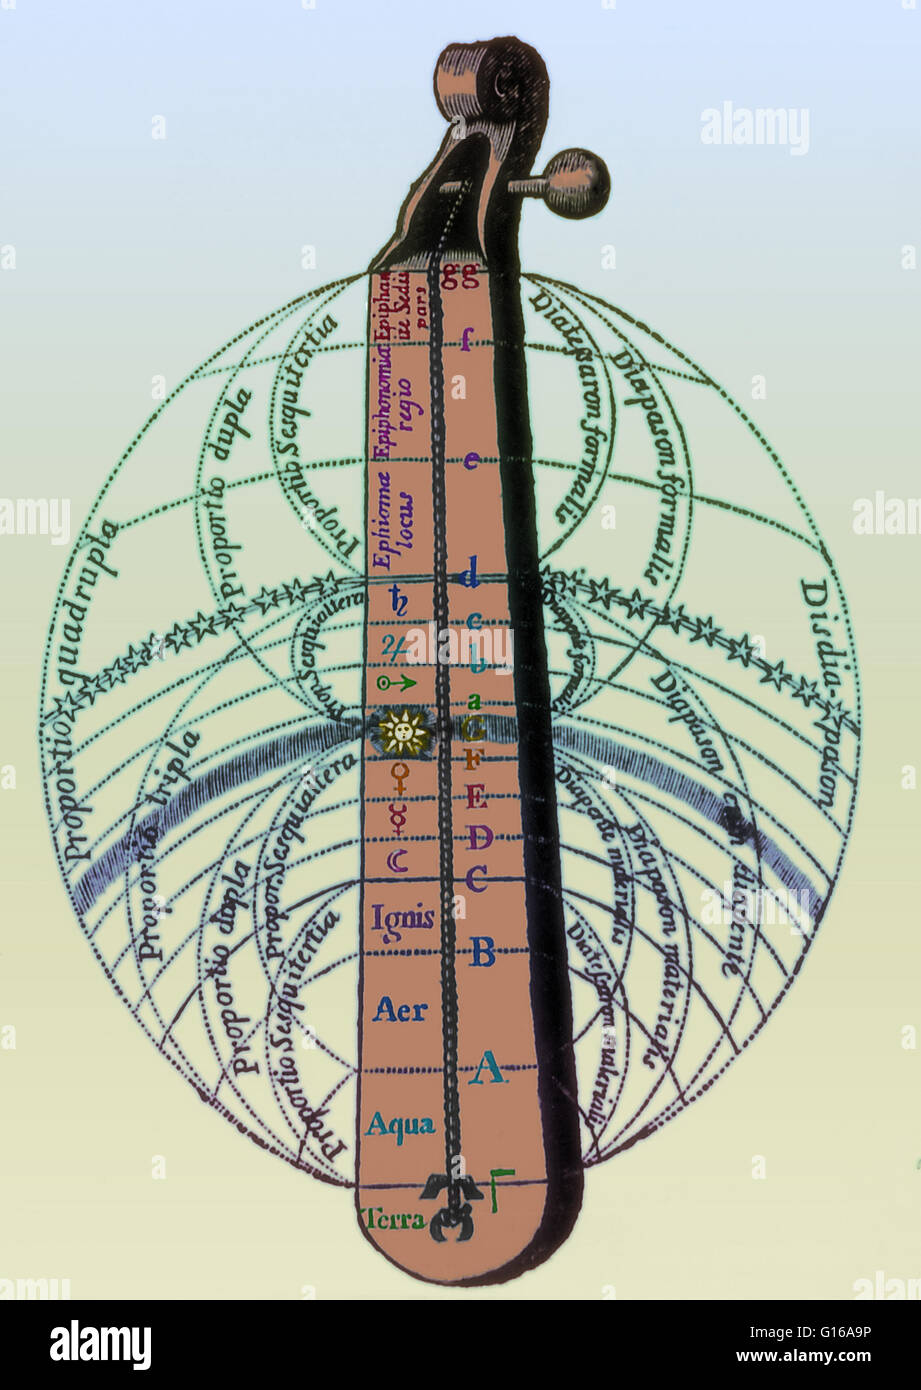 Gravure intitulée "Harmonie des Sphères" par l'anglais Robert Fludd hermeticist (1574-1637), montrant l'âme de l'homme en harmonie avec l'univers. Il lie l'univers de Ptolémée à intervalles musicaux. Remarque la forme de violon, et de la main qui sort du nuage Banque D'Images